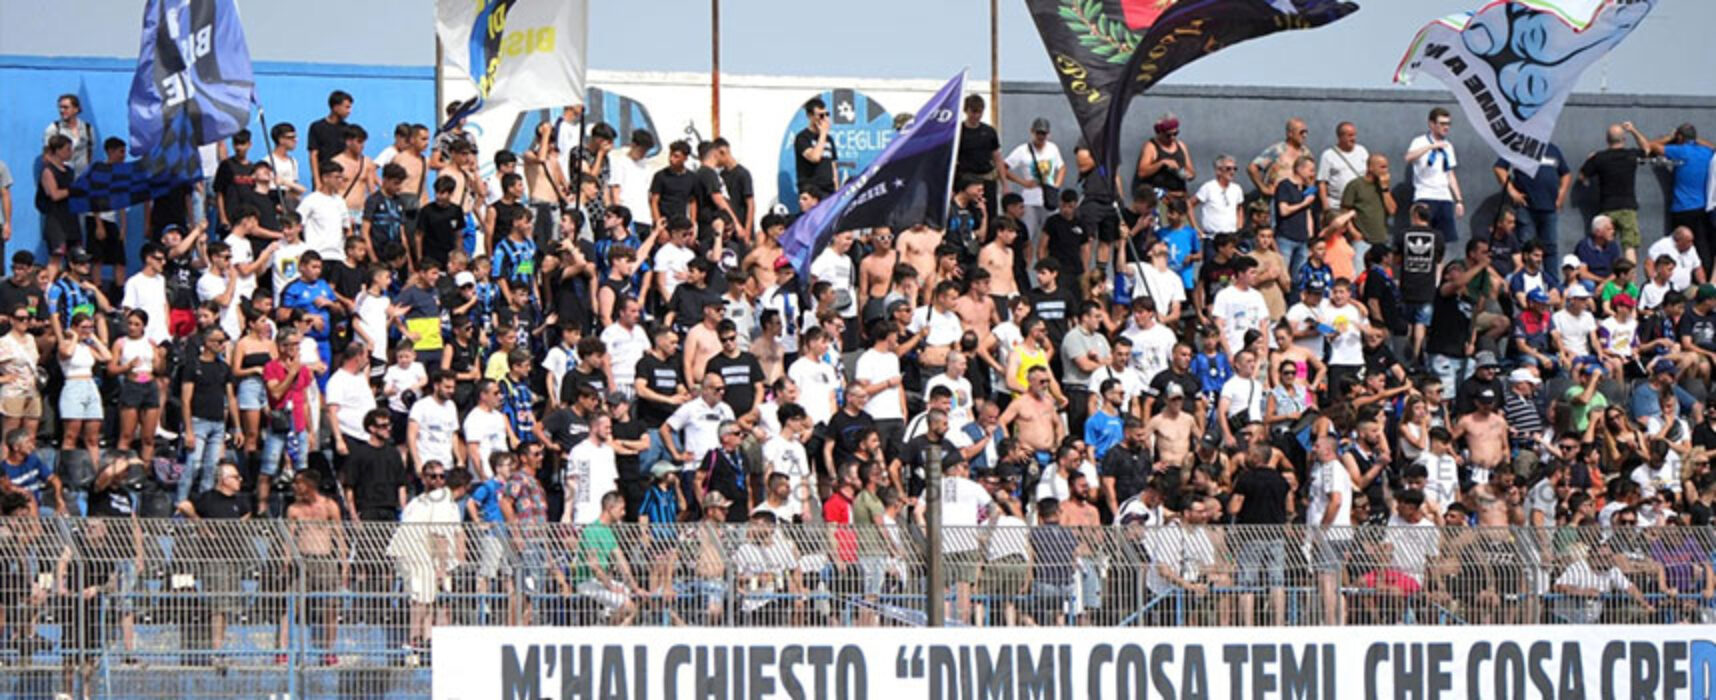 Bisceglie: trasferta vietata a tifosi per gara con Amalfi, dirigenza chiede disputa a porte chiuse